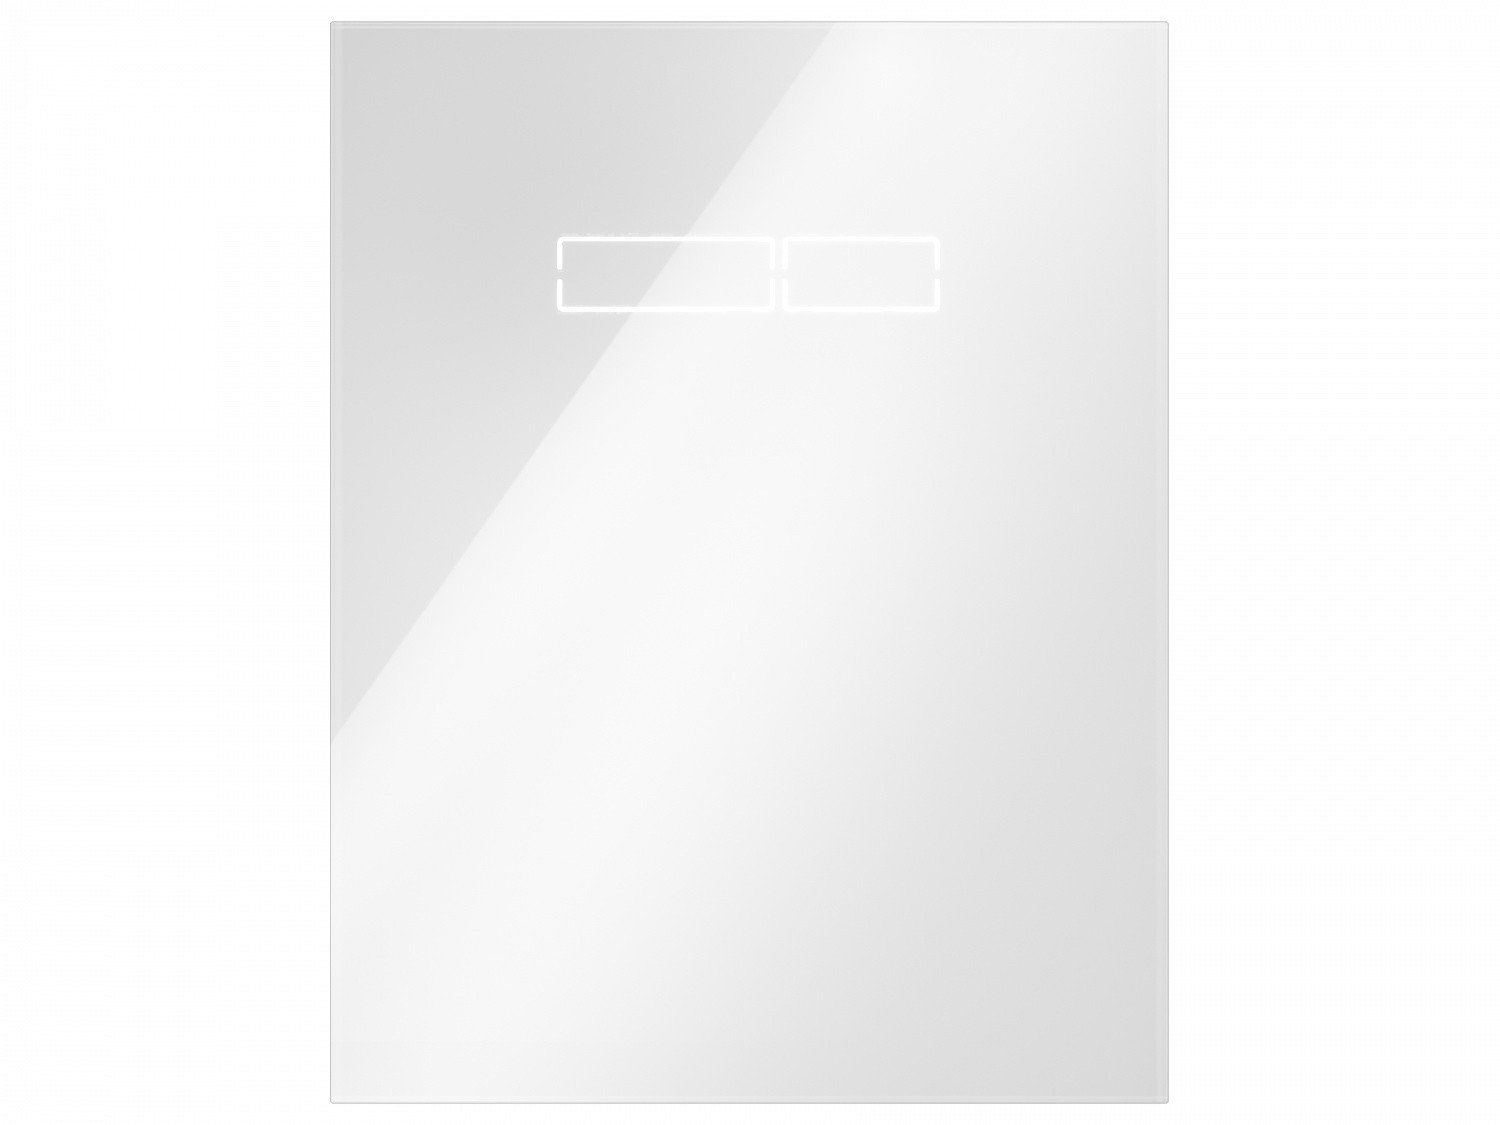 TECE Lux 9650002 Верхняя стеклянная панель с сенсорным управлением (белое стекло)